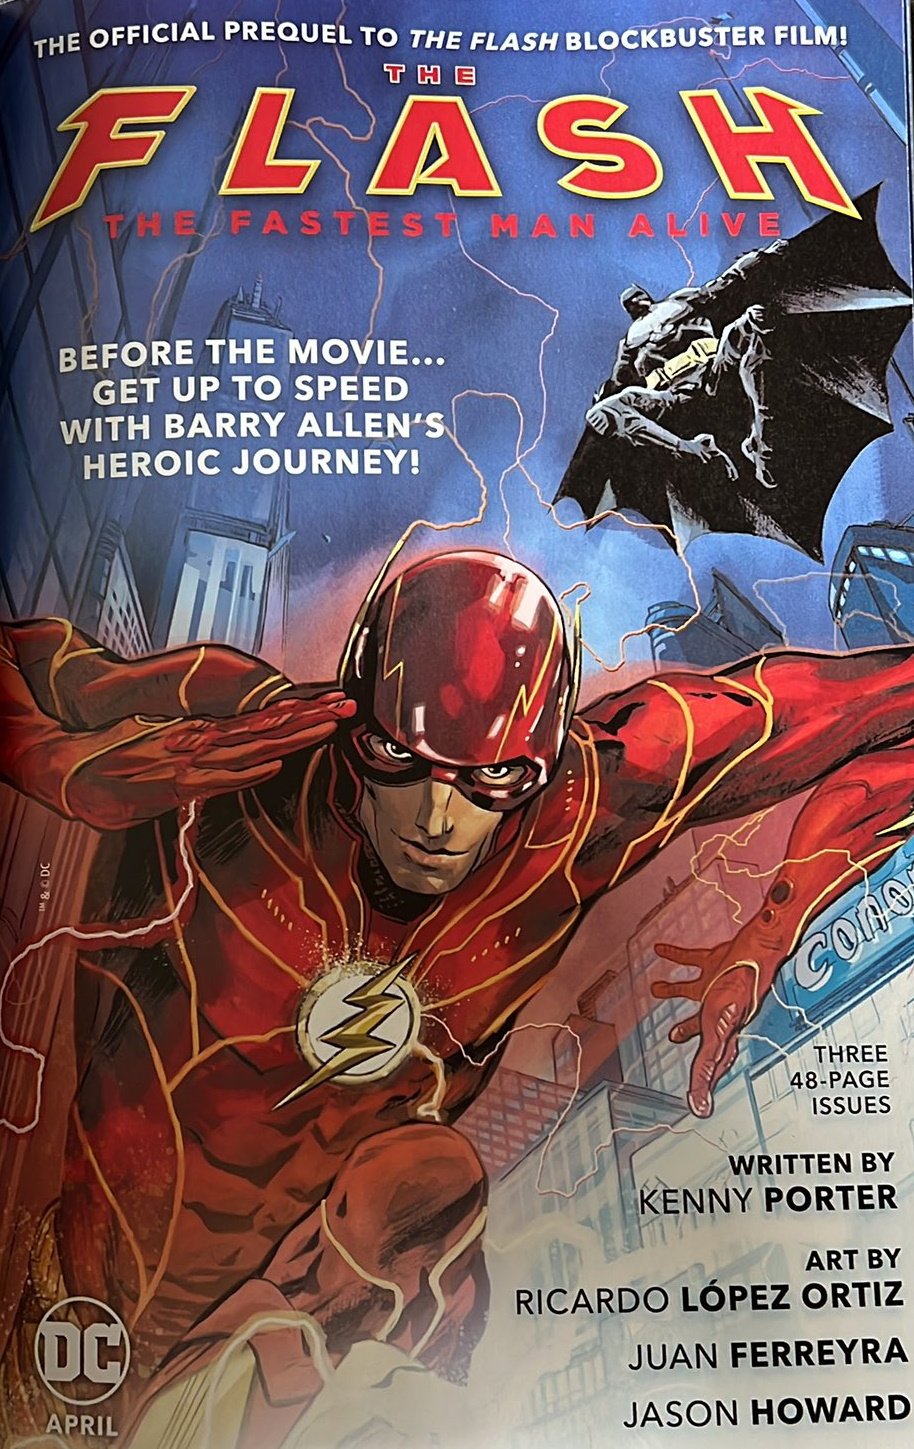 La pubblicità del prequel di Flash cancellato